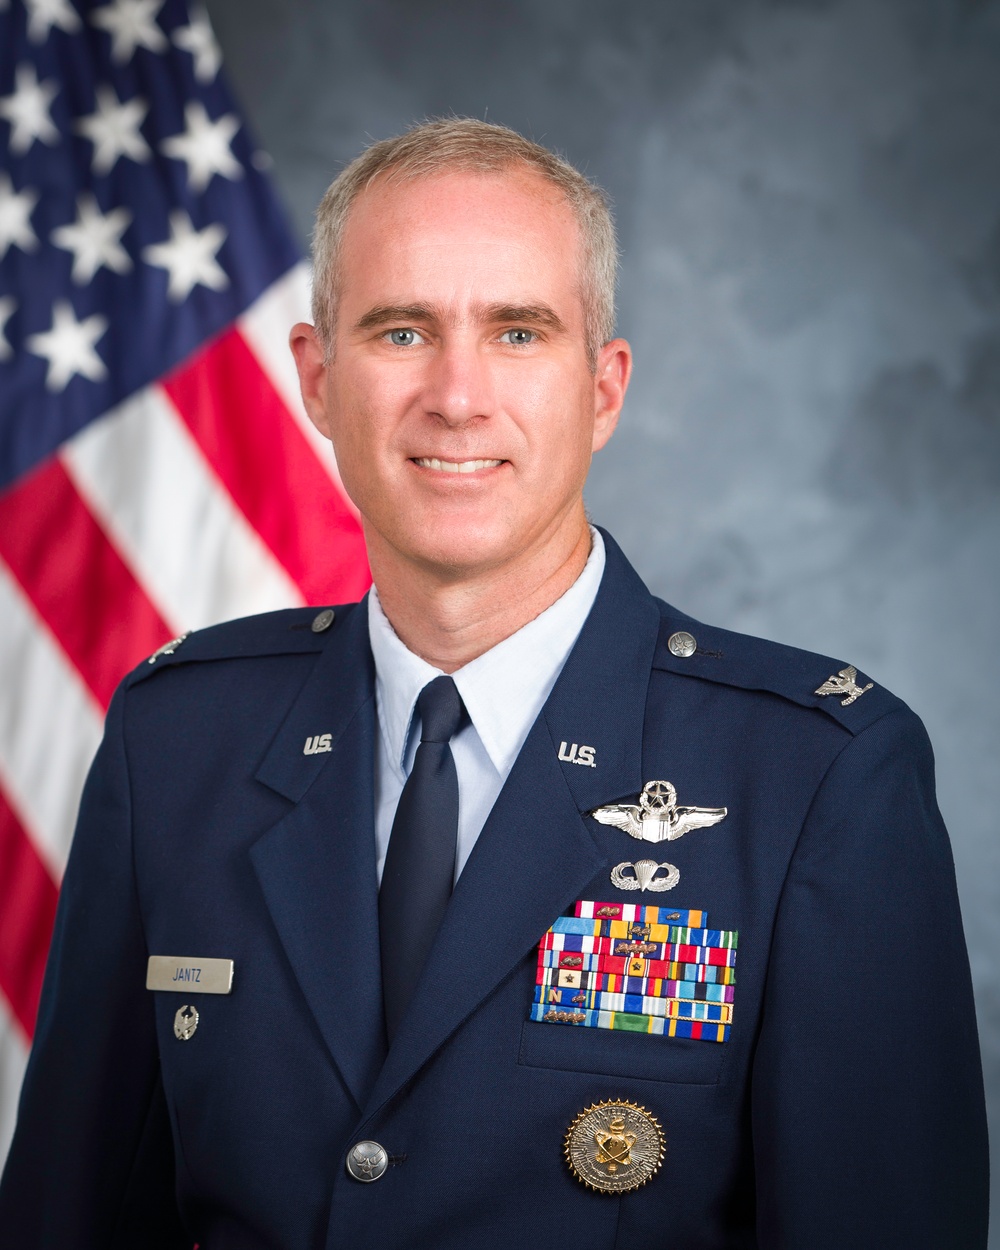 Official portrait, Col. Steven J. Jantz, US Air Force